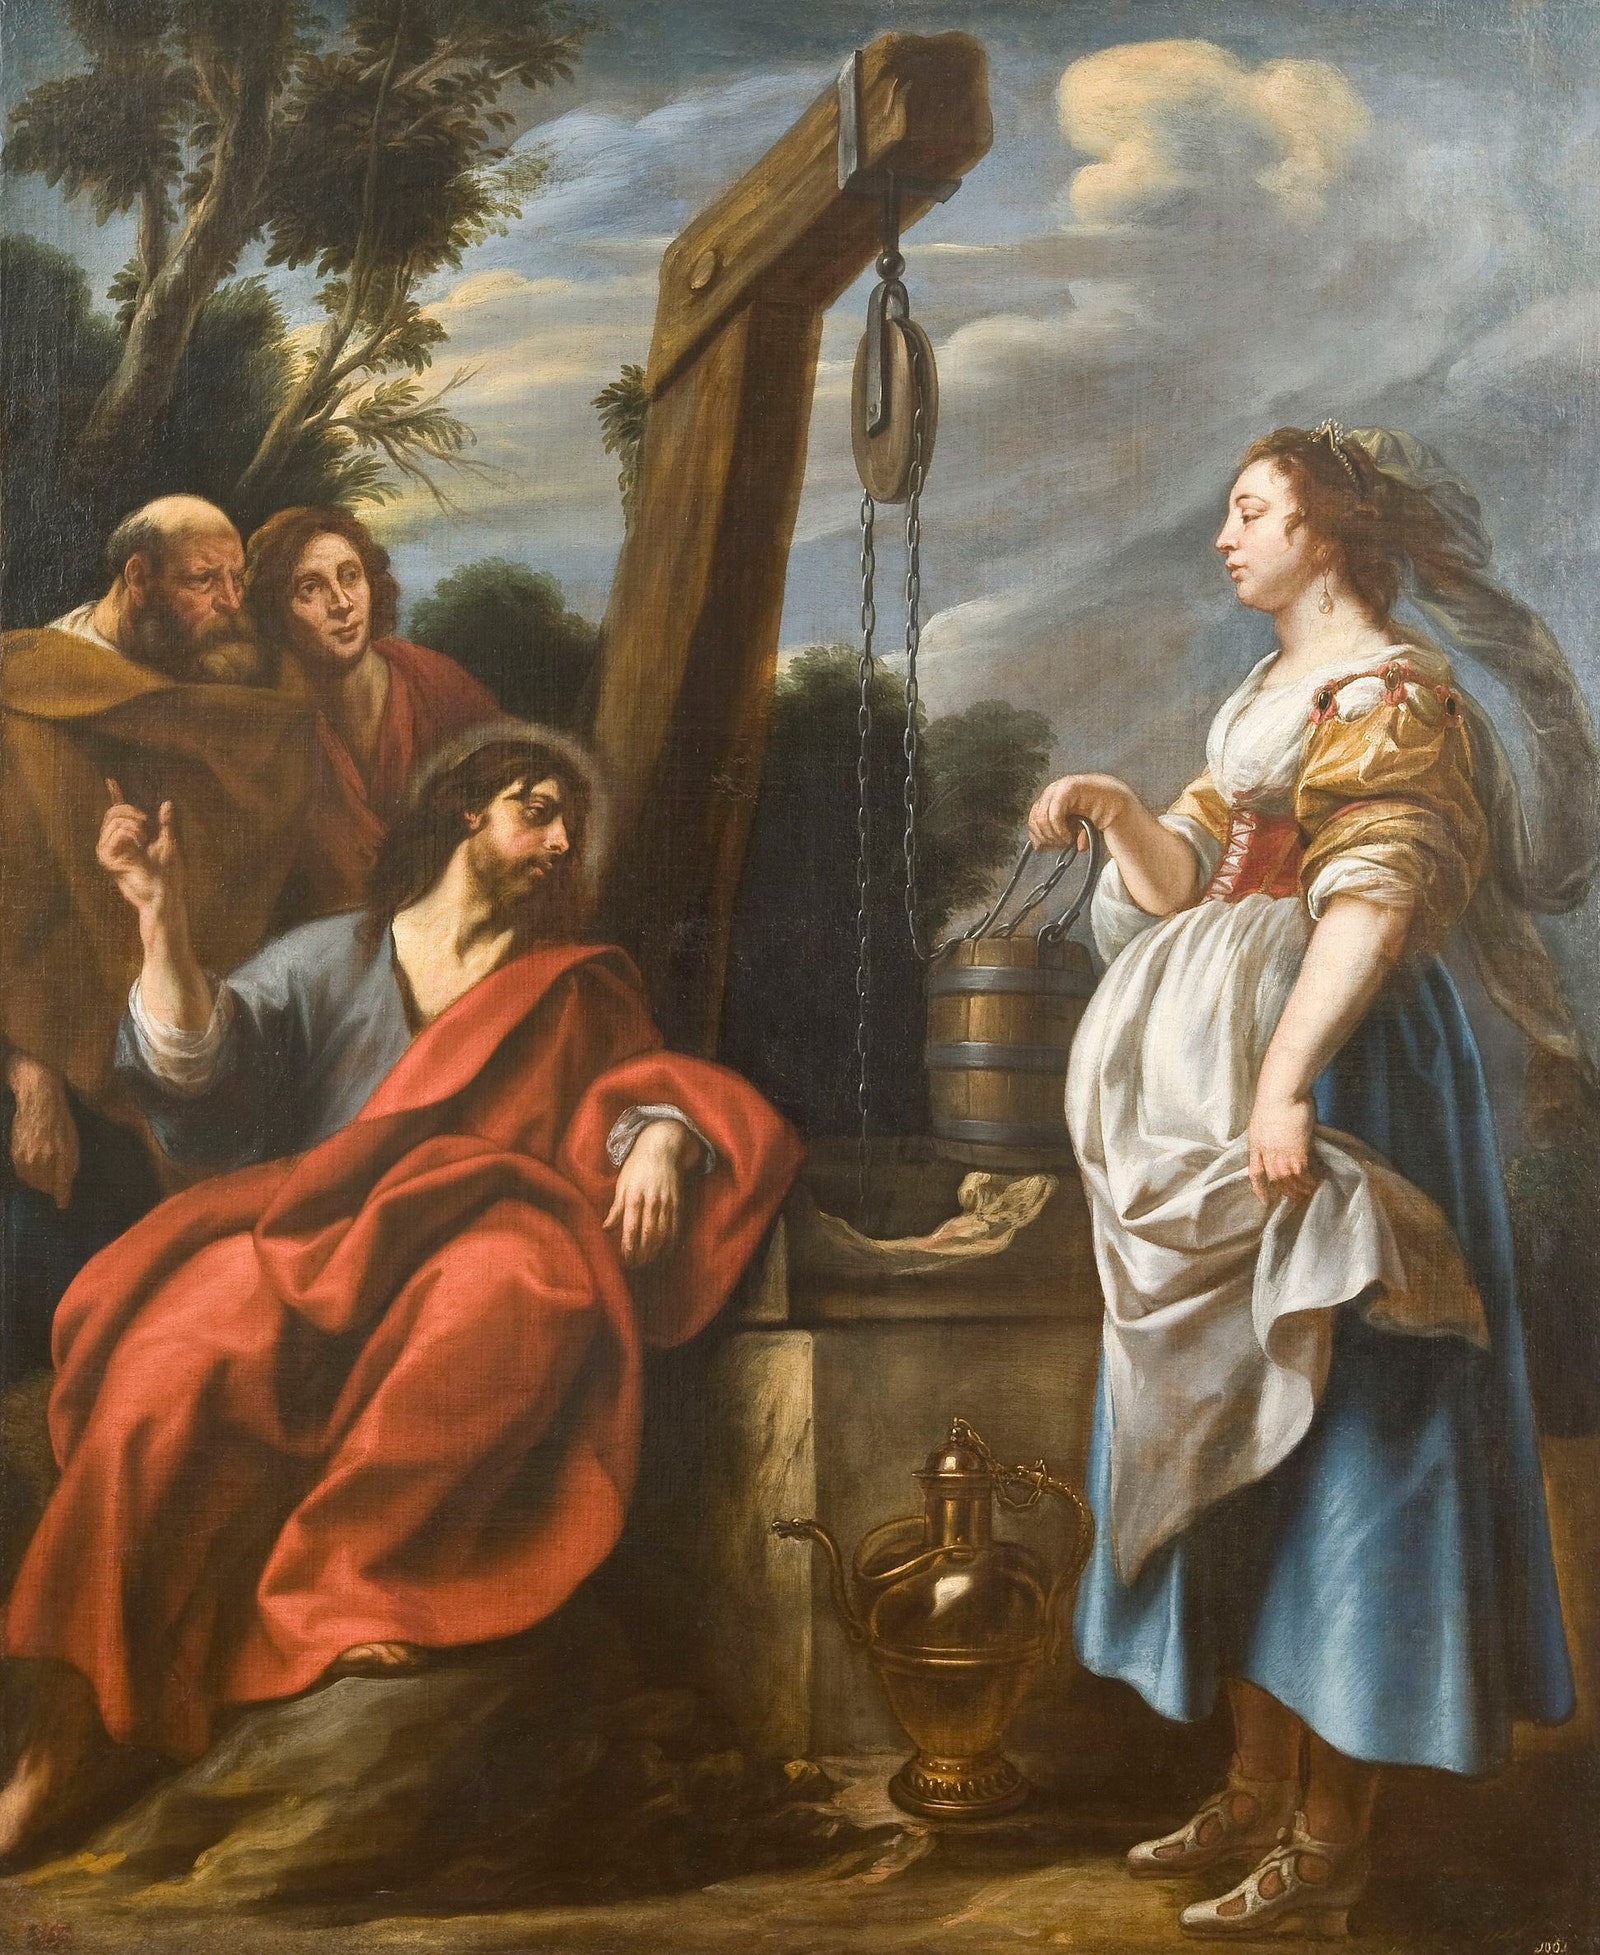 Якоб Йорданс. Христос и самаритянка. Около 1650. Холст масло. Нижегородский государственный художественный музей.